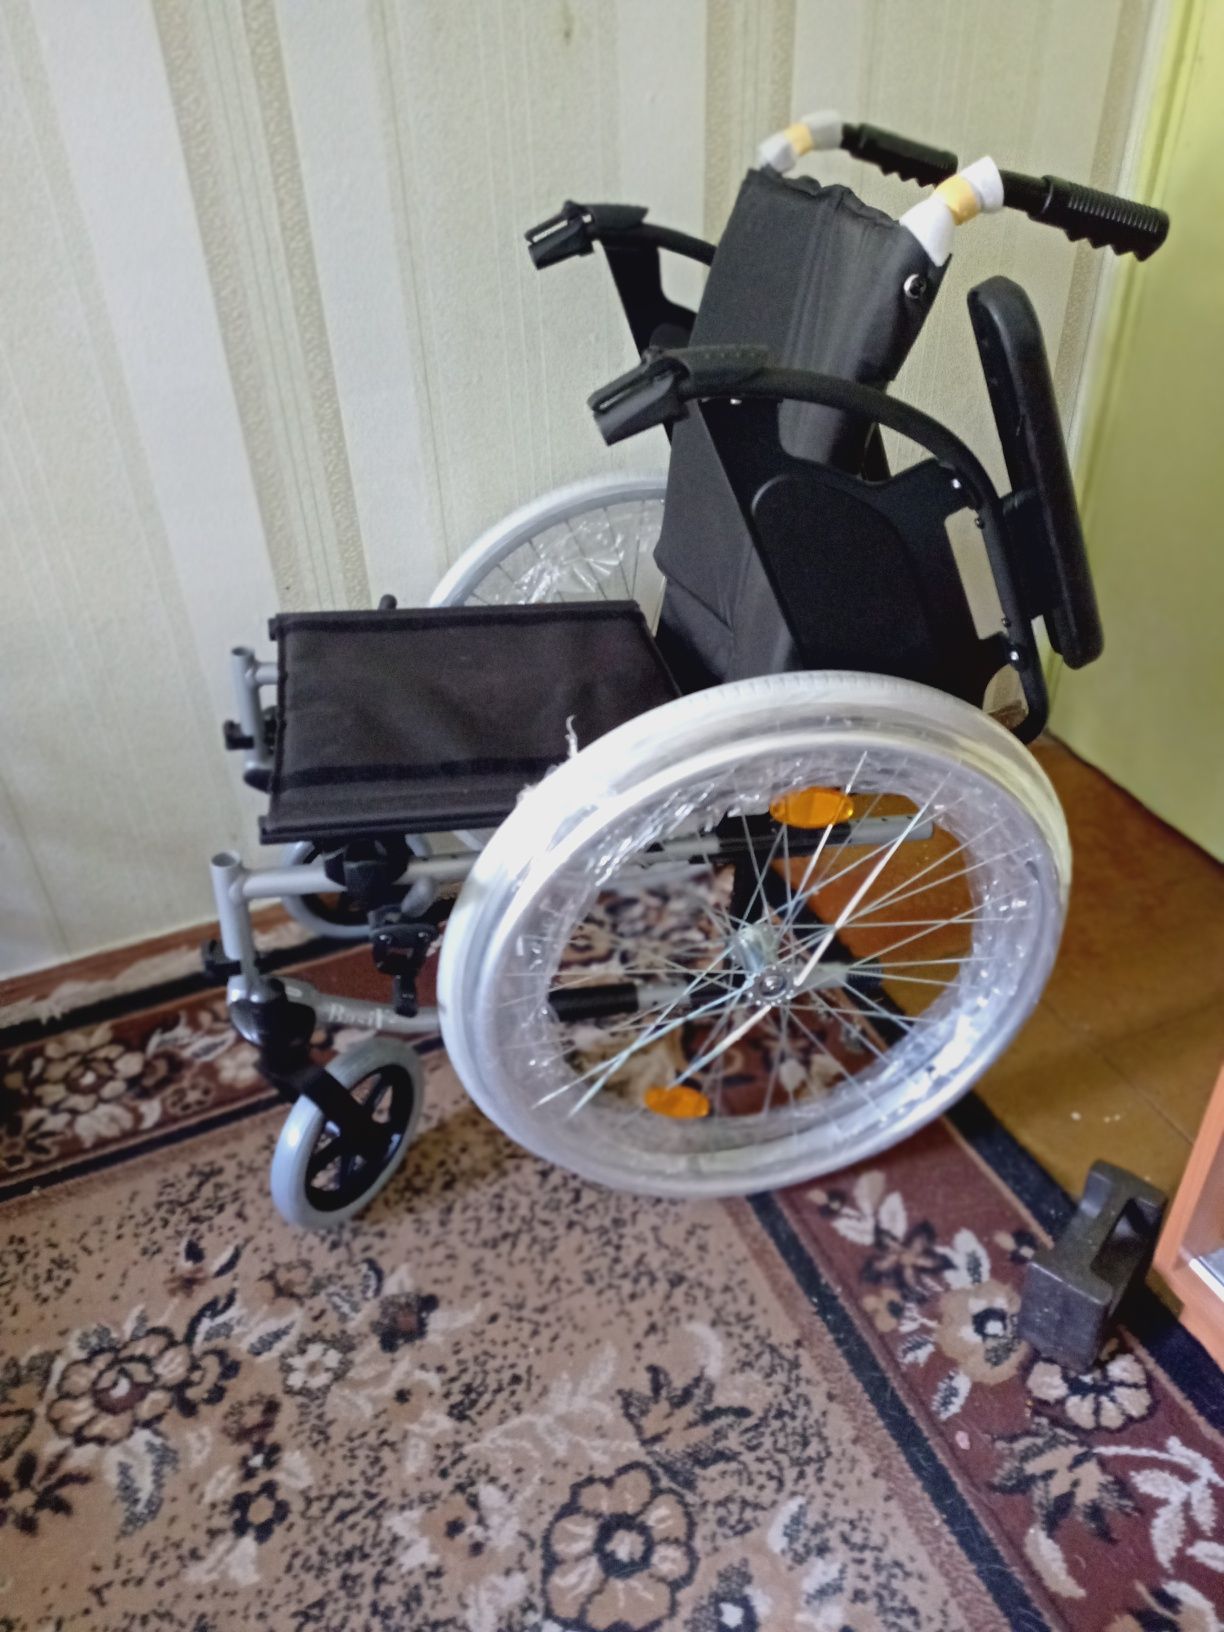 Візок інвалідний Basix 2  договірна.